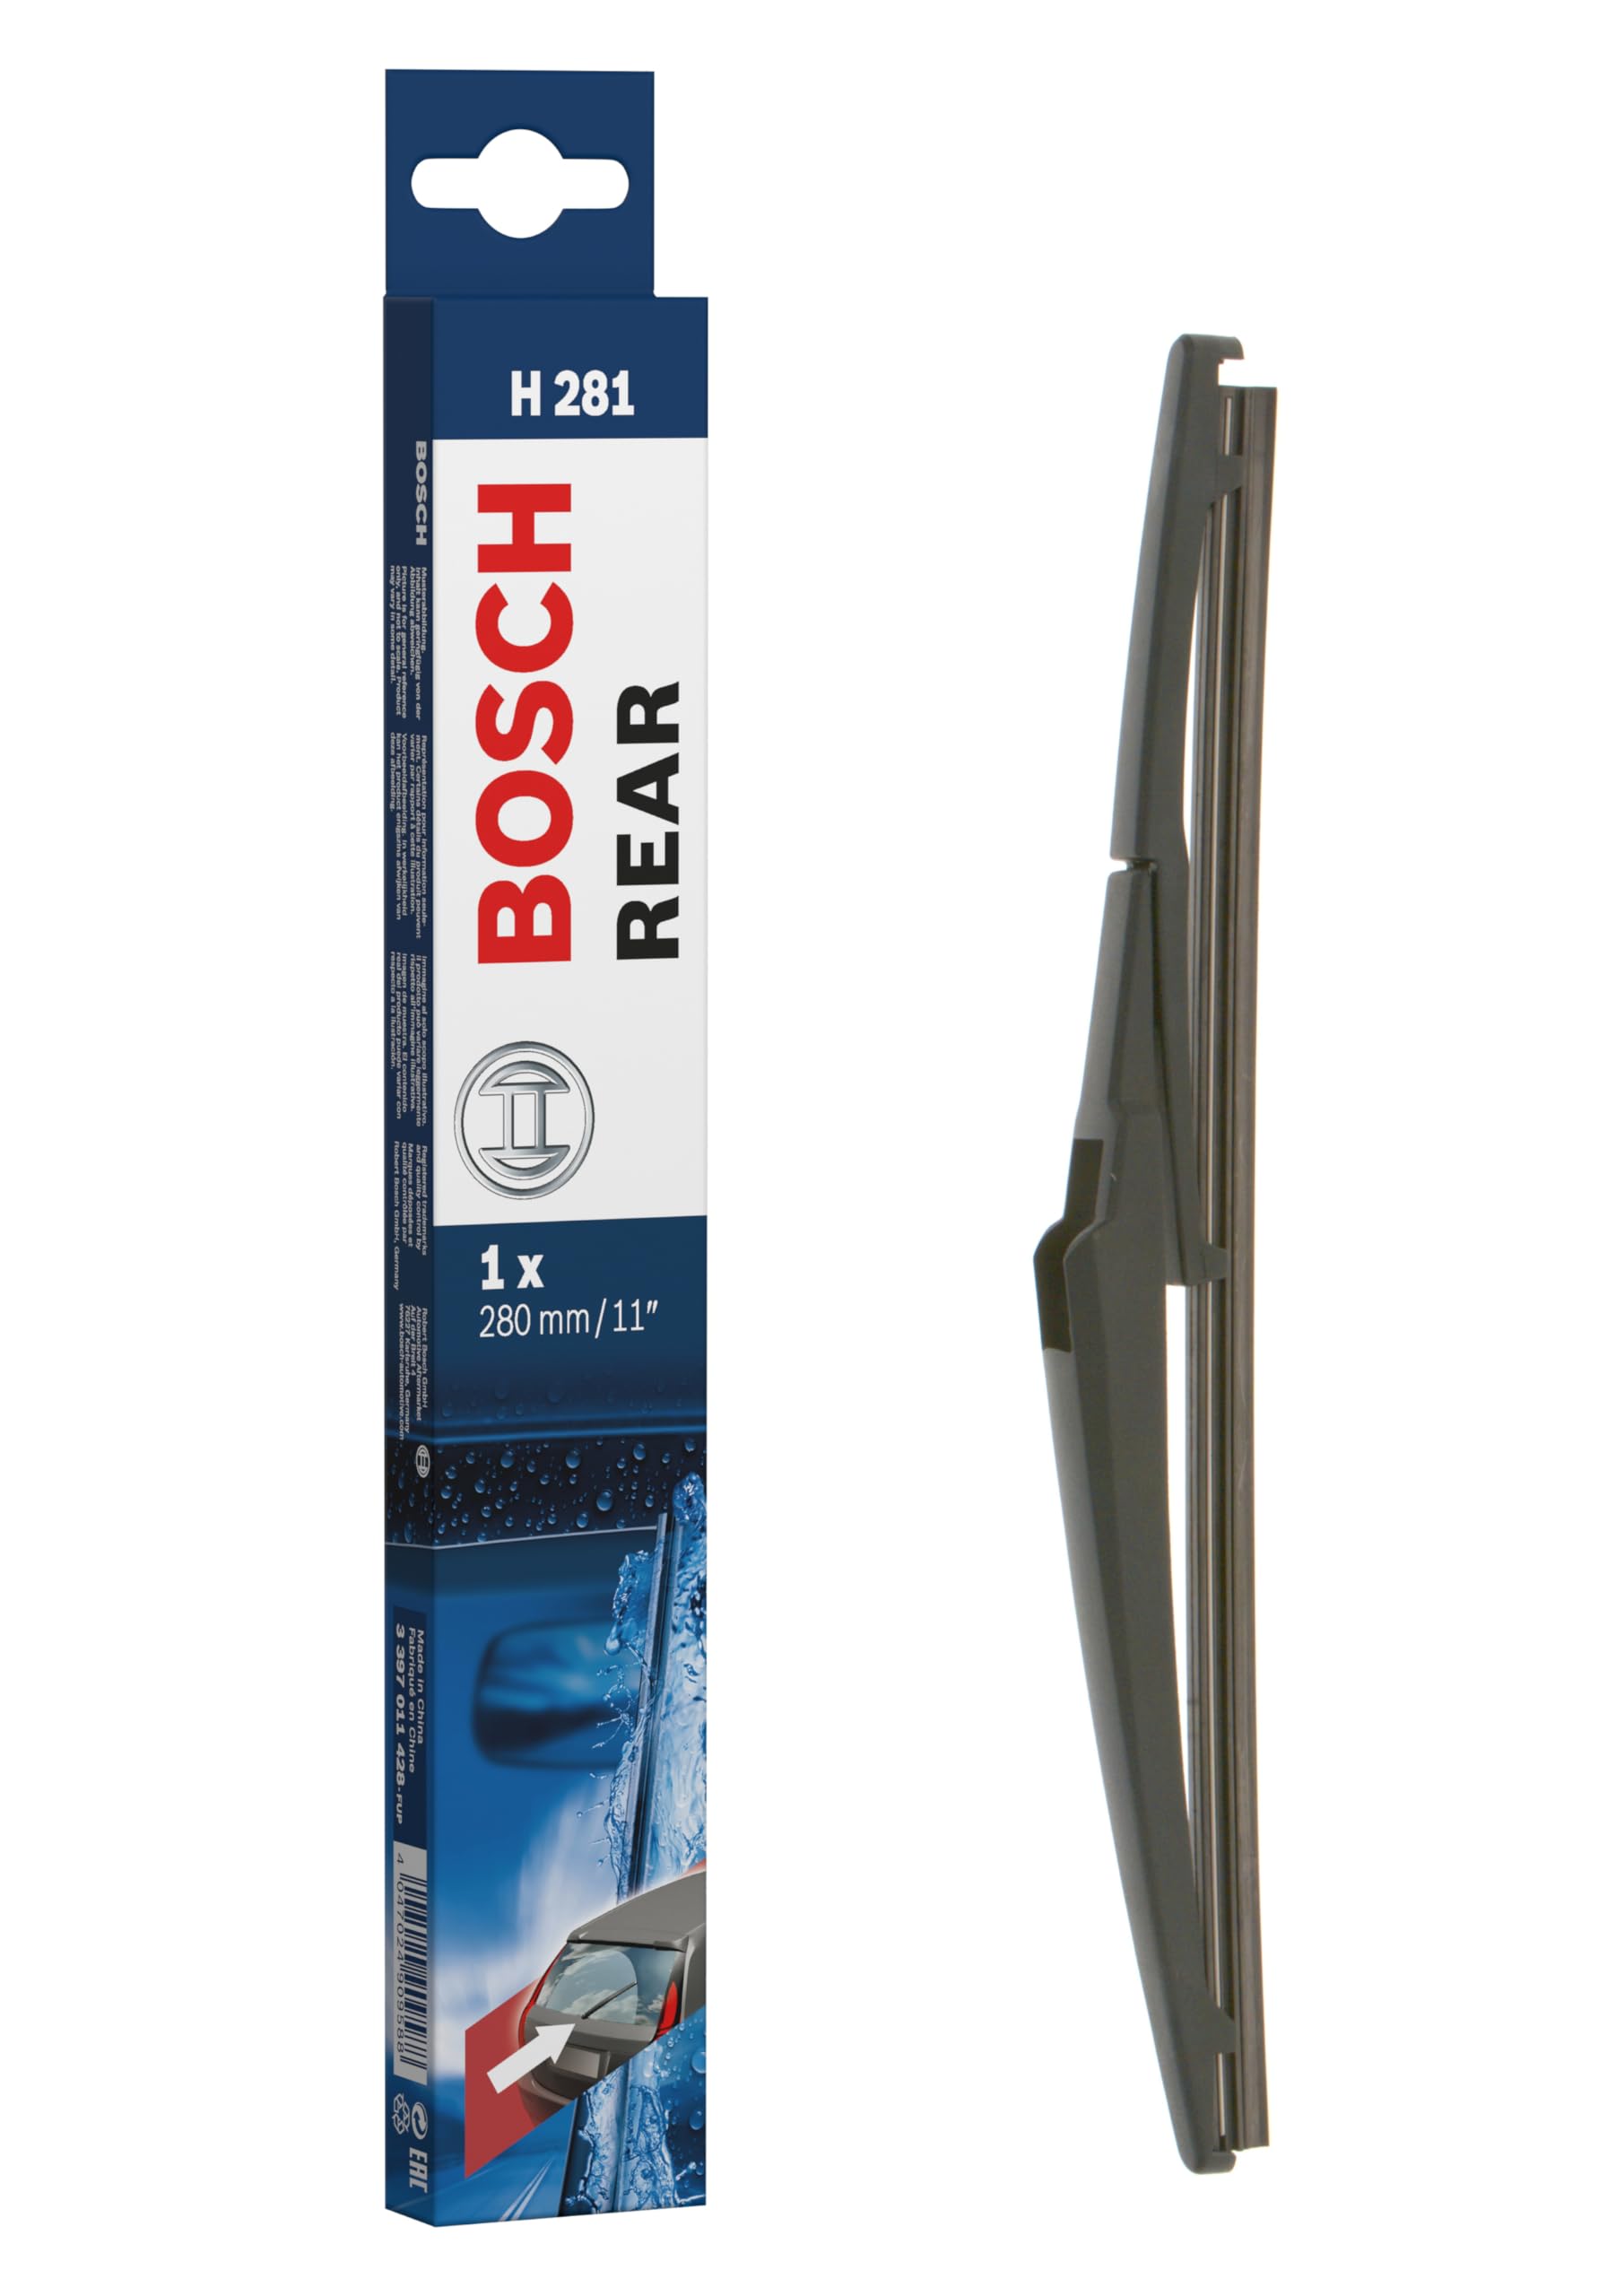 Bosch Scheibenwischer Rear H281, Länge: 280mm – Scheibenwischer für Heckscheibe von Bosch Automotive